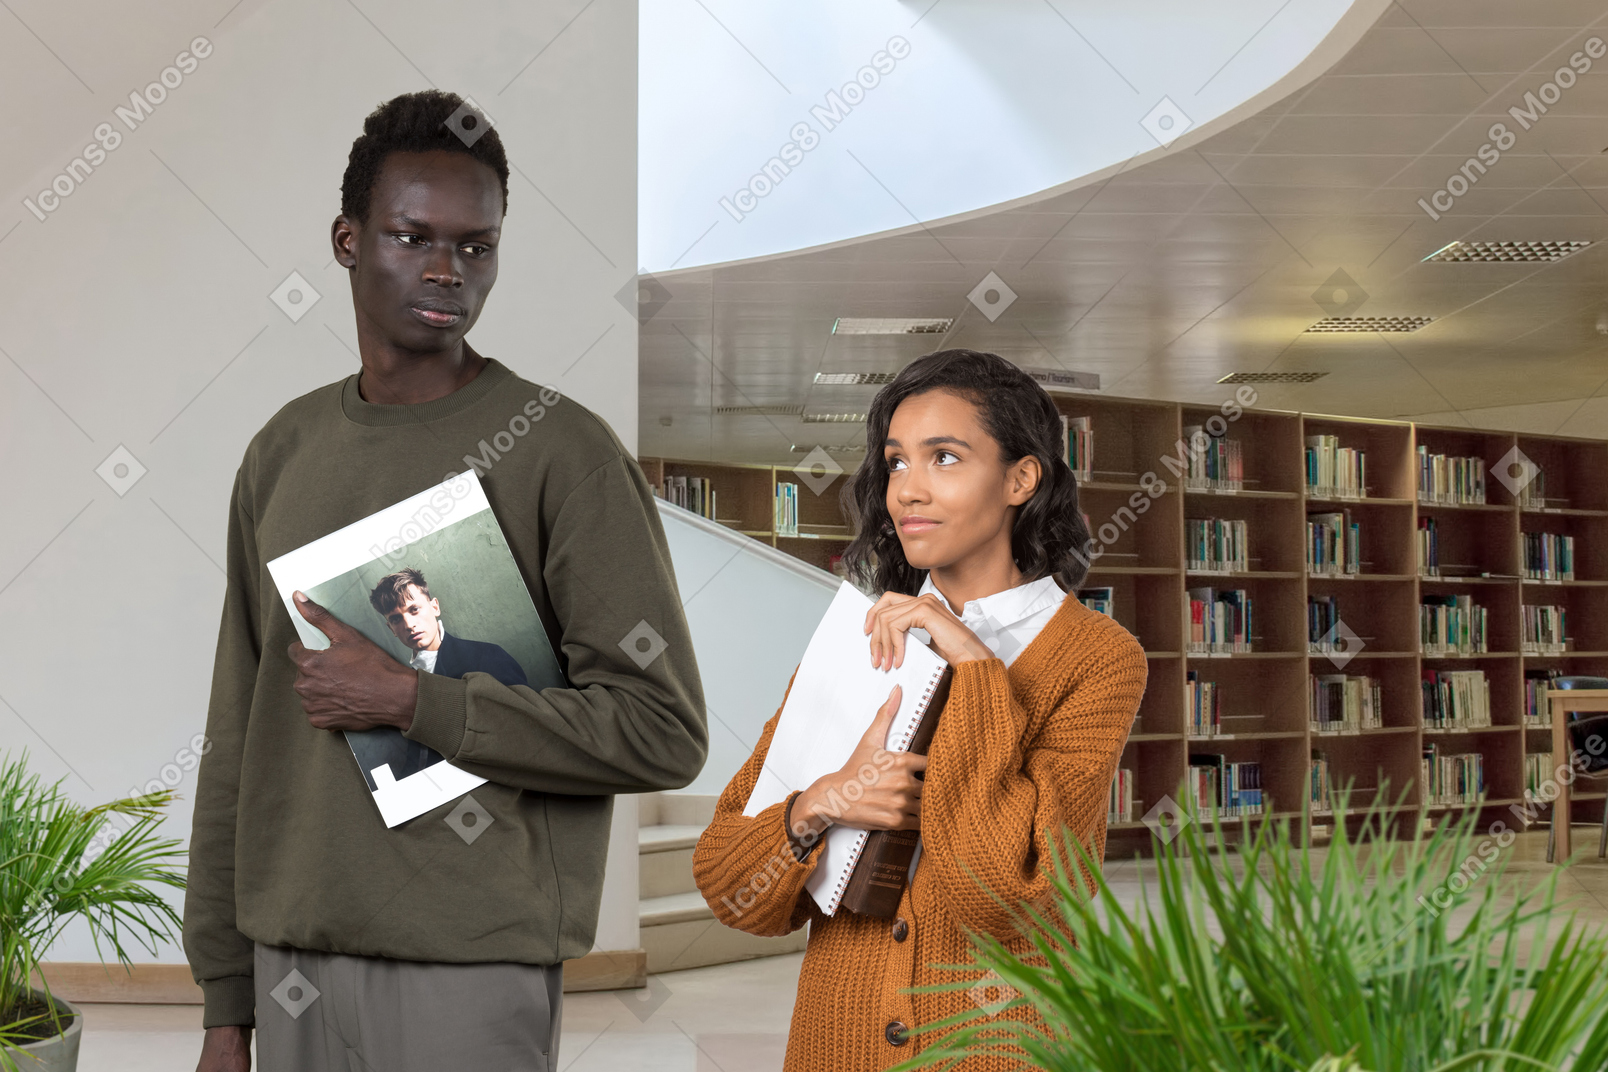 Eine schwarze bescheiden gekleidete frau mit büchern in den händen schaut den ernsten schwarzen mann in der bibliothek liebevoll an, der ihren blick nicht bemerkt